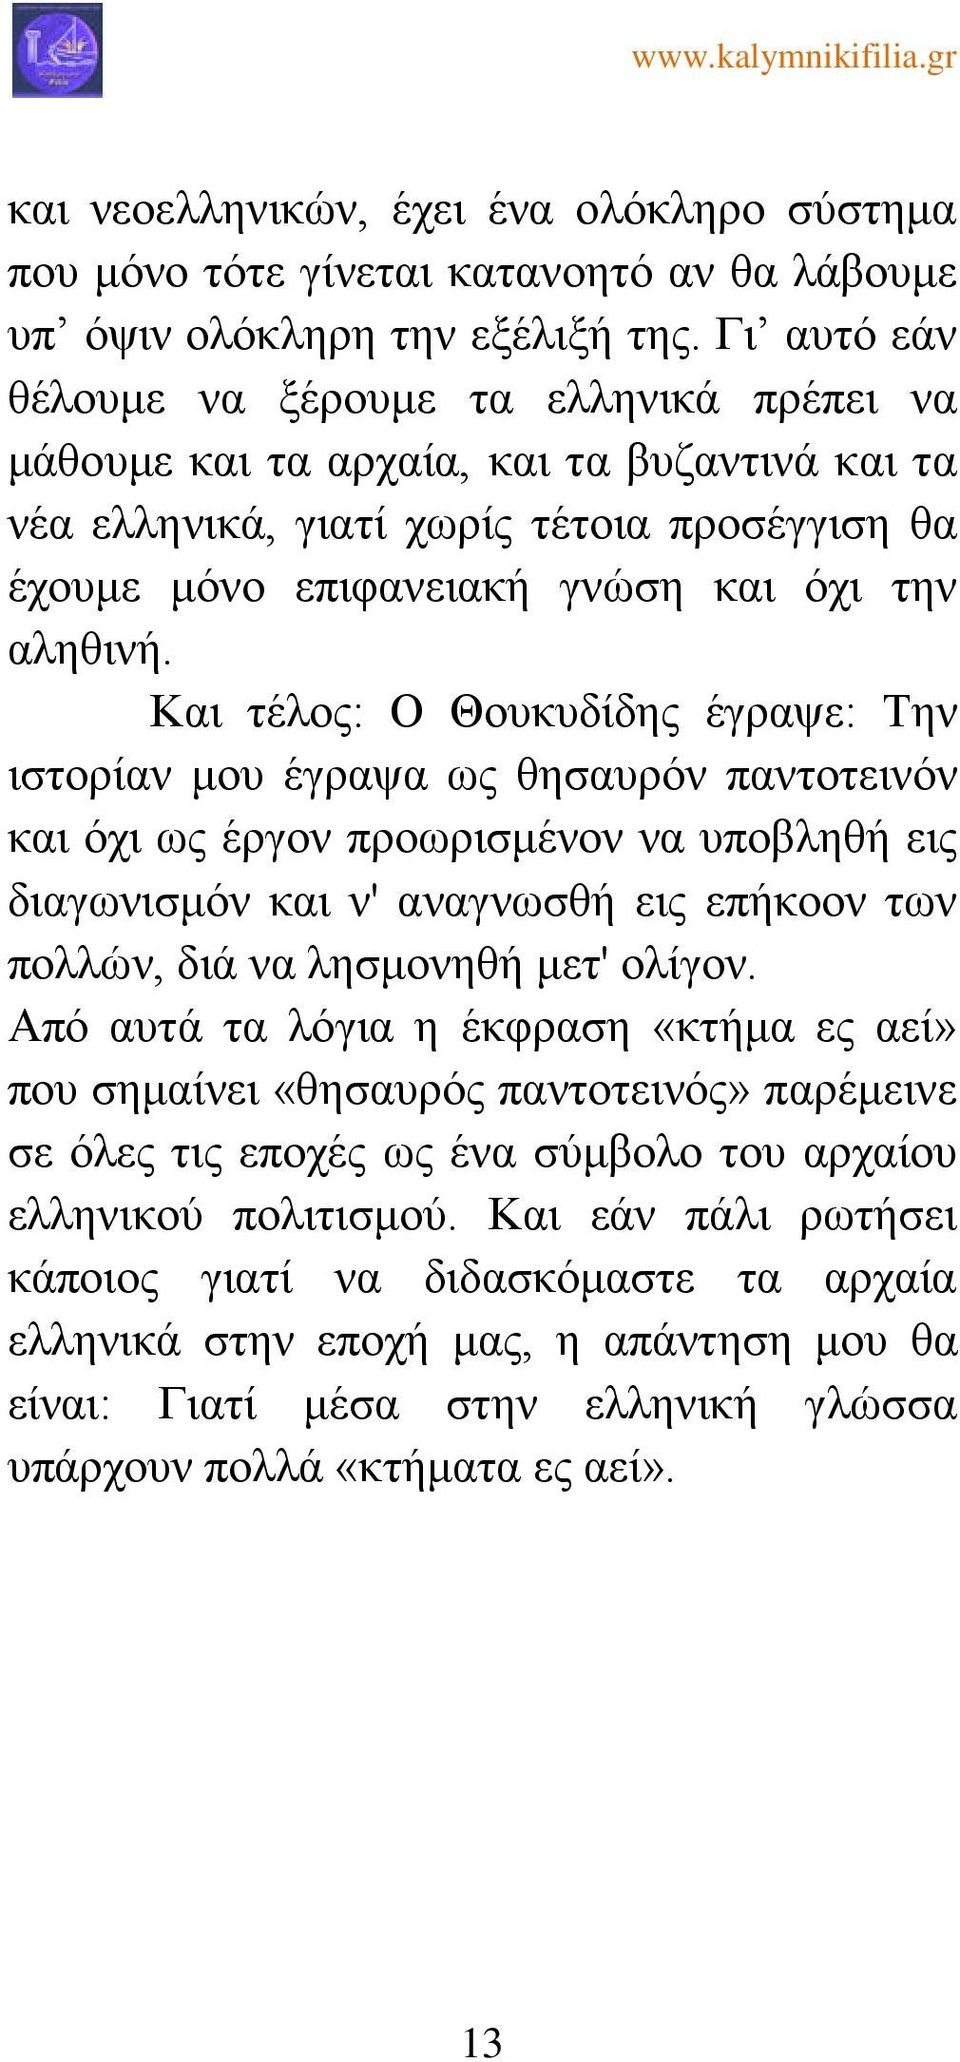 Και τέλος: Ο Θουκυδίδης έγραψε: Την ιστορίαν μου έγραψα ως θησαυρόν παντοτεινόν και όχι ως έργον προωρισμένον να υποβληθή εις διαγωνισμόν και ν' αναγνωσθή εις επήκοον των πολλών, διά να λησμονηθή